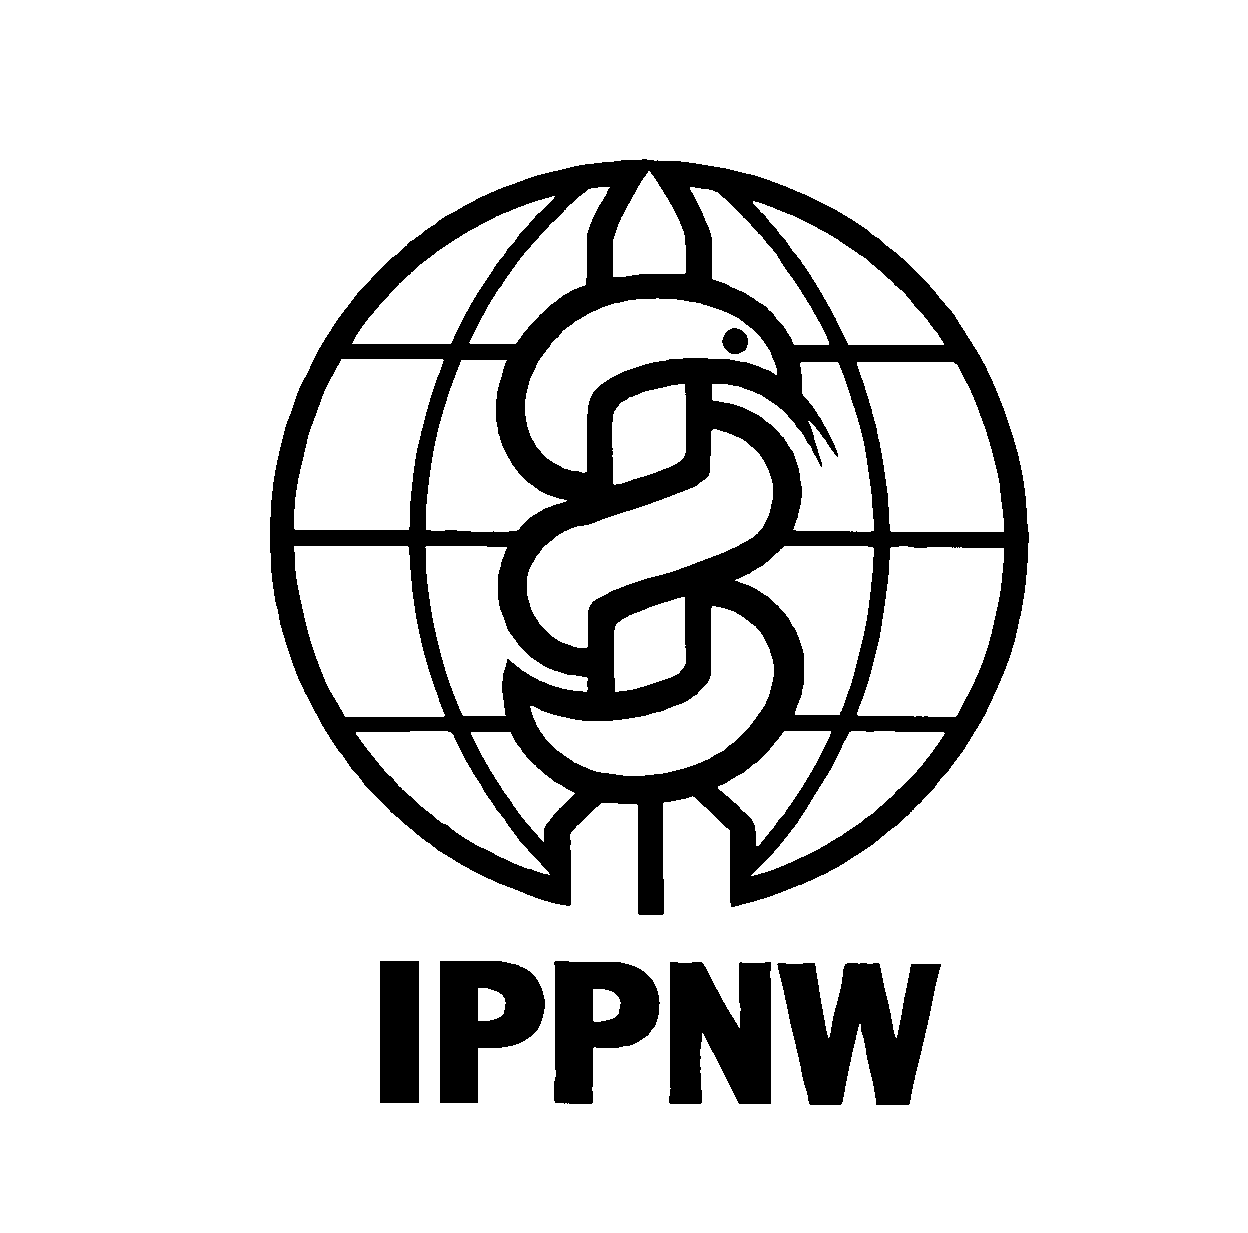 IPPNW